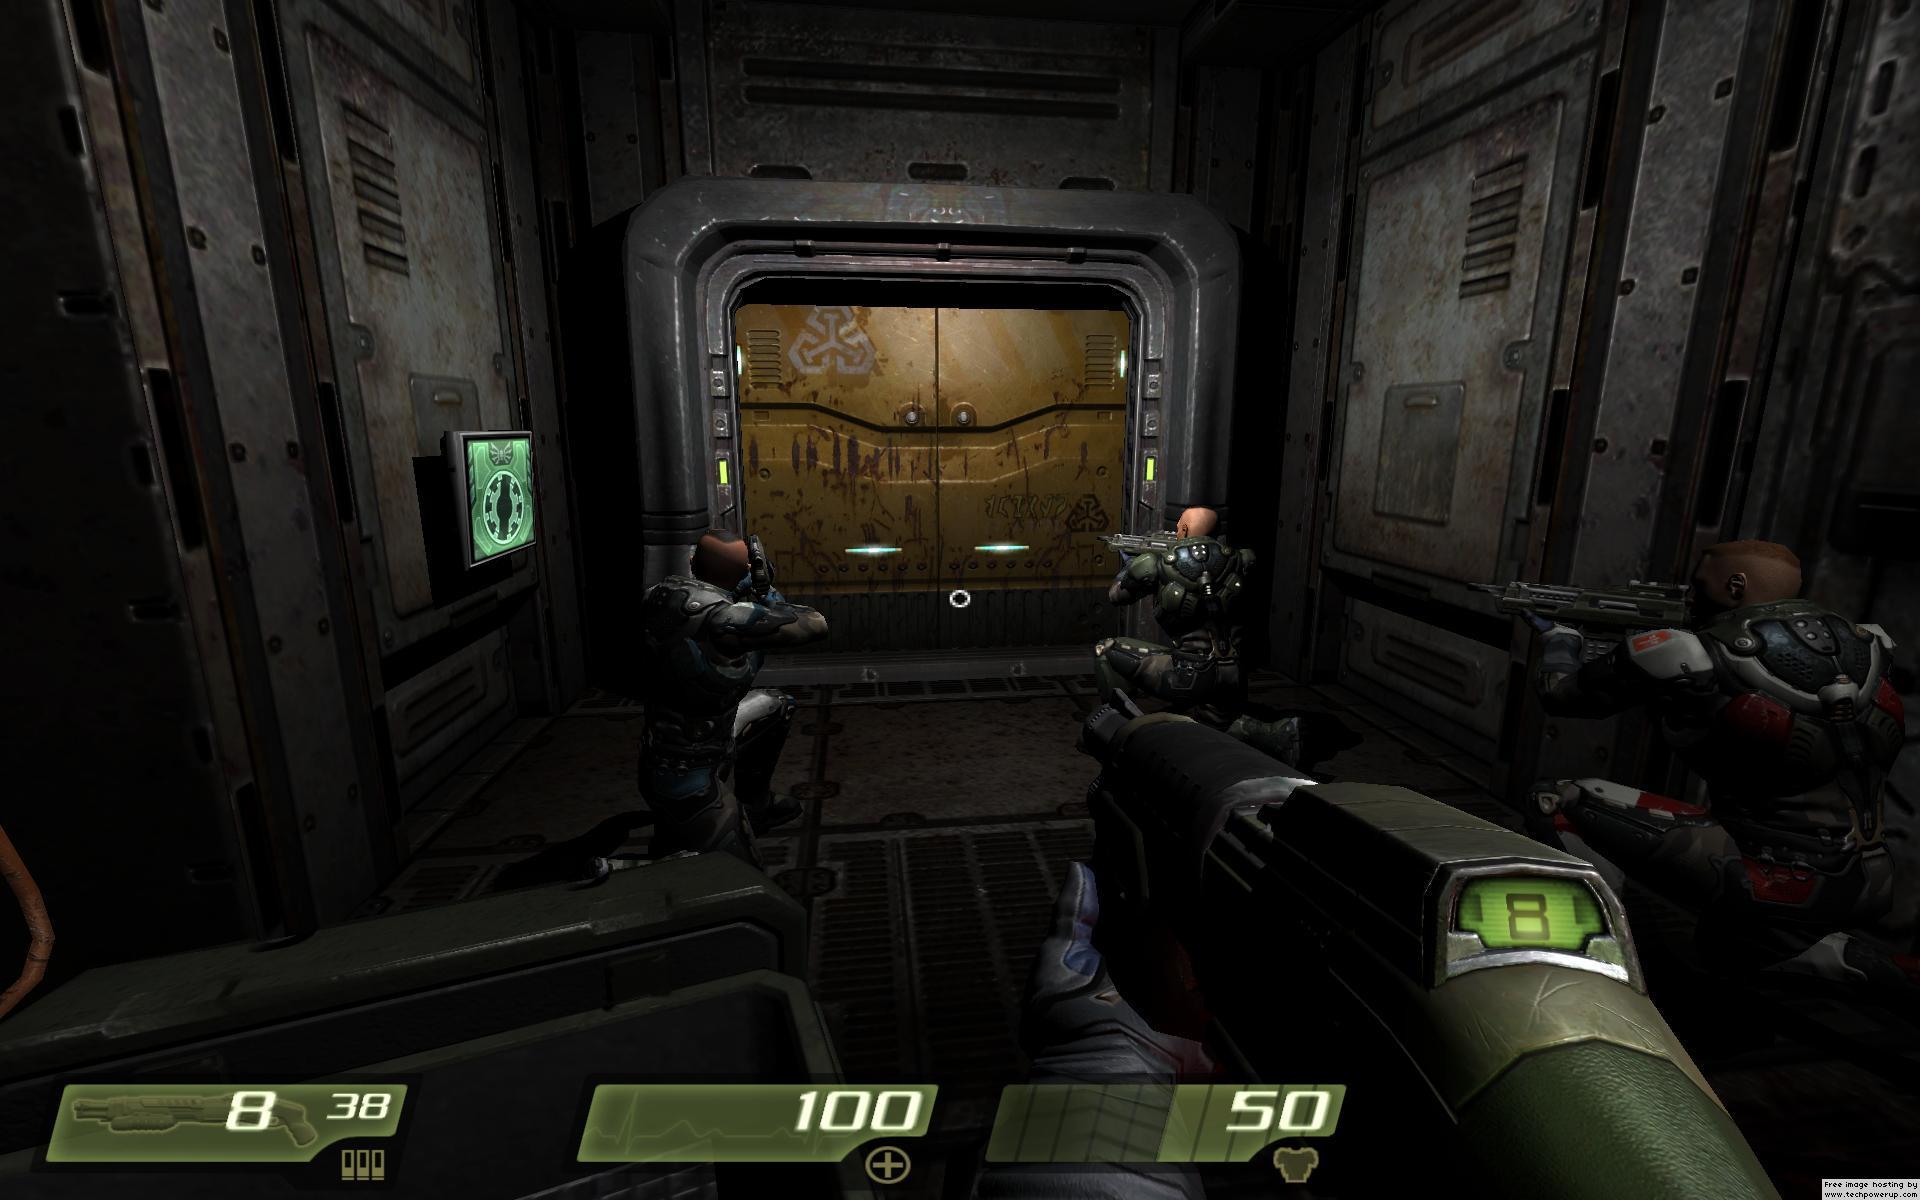 Quake-serien fikk en oppfølger i 2005, bygd på samme lekre lest som Doom 3.